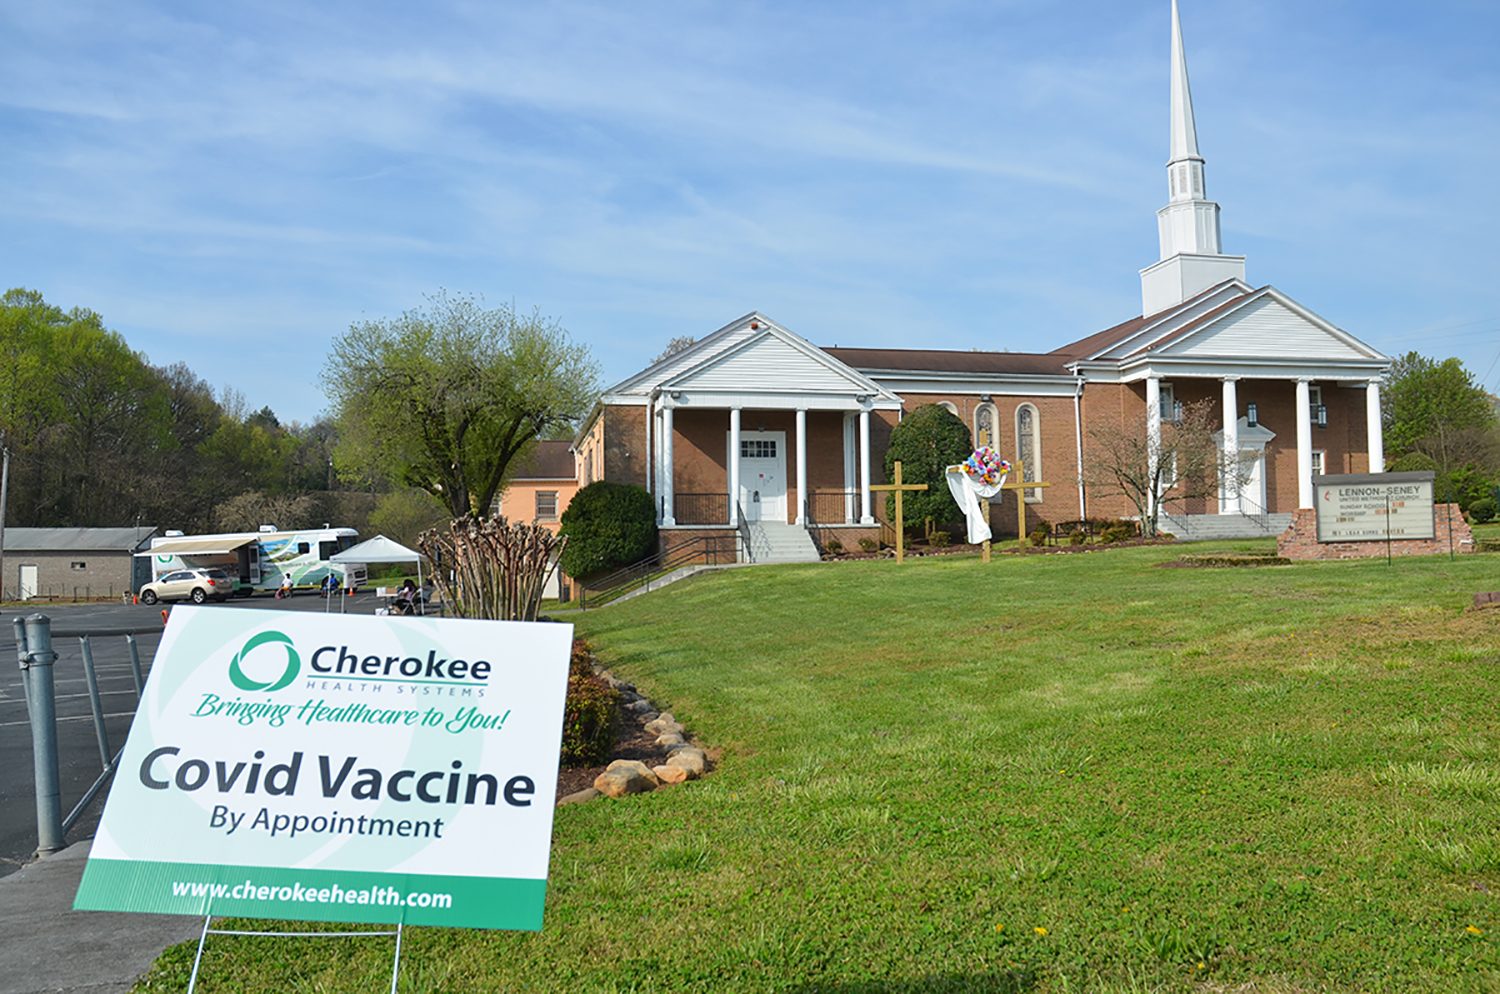 La Iglesia Metodista Unida (IMU) Lennon-Seney lidera el camino en la obtención de vacunas para una comunidad marginada en Knoxville, Tennessee. Foto cortesía de la Conferencia Anual de Holston.